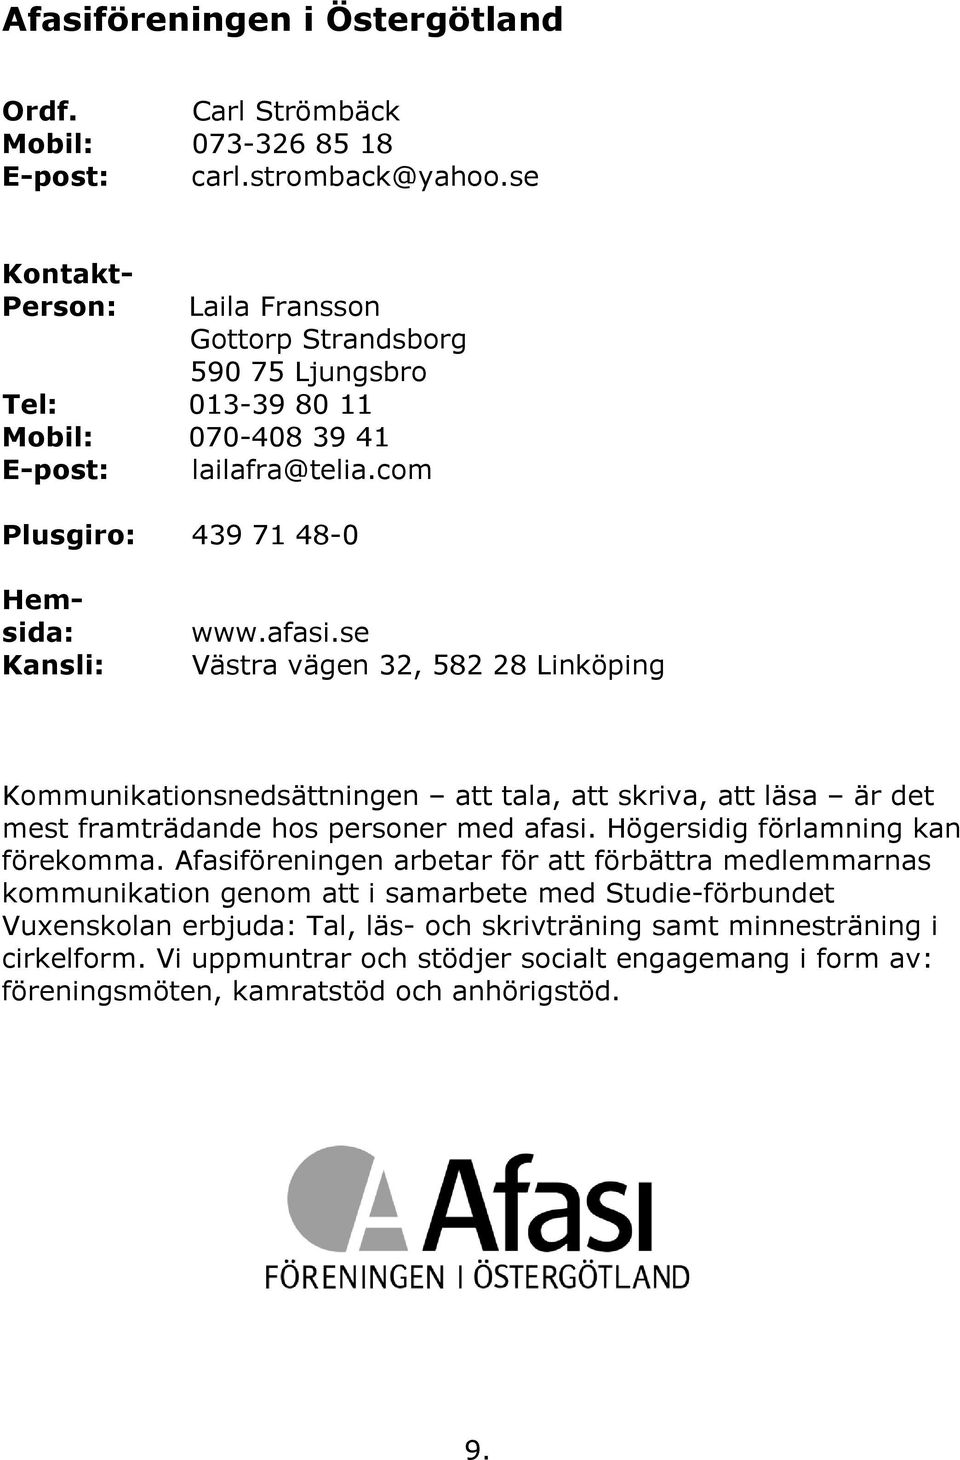 se Västra vägen 32, 582 28 Linköping Kommunikationsnedsättningen att tala, att skriva, att läsa är det mest framträdande hos personer med afasi. Högersidig förlamning kan förekomma.